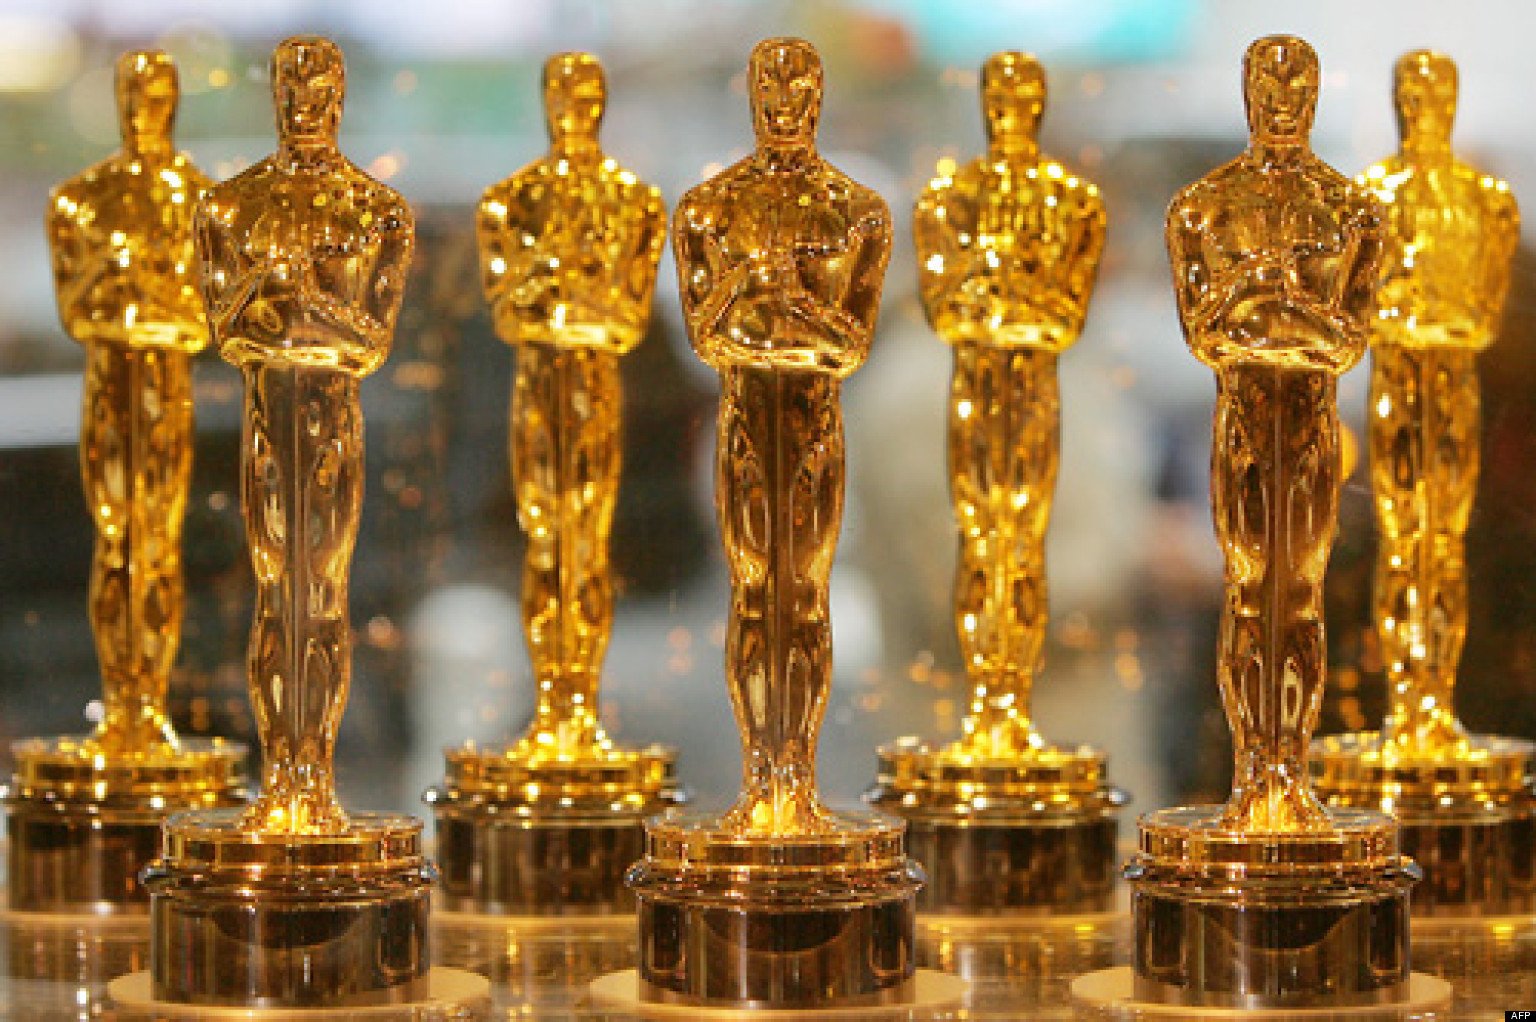 Streaming Originals Make a Mark at the 2021 Oscars